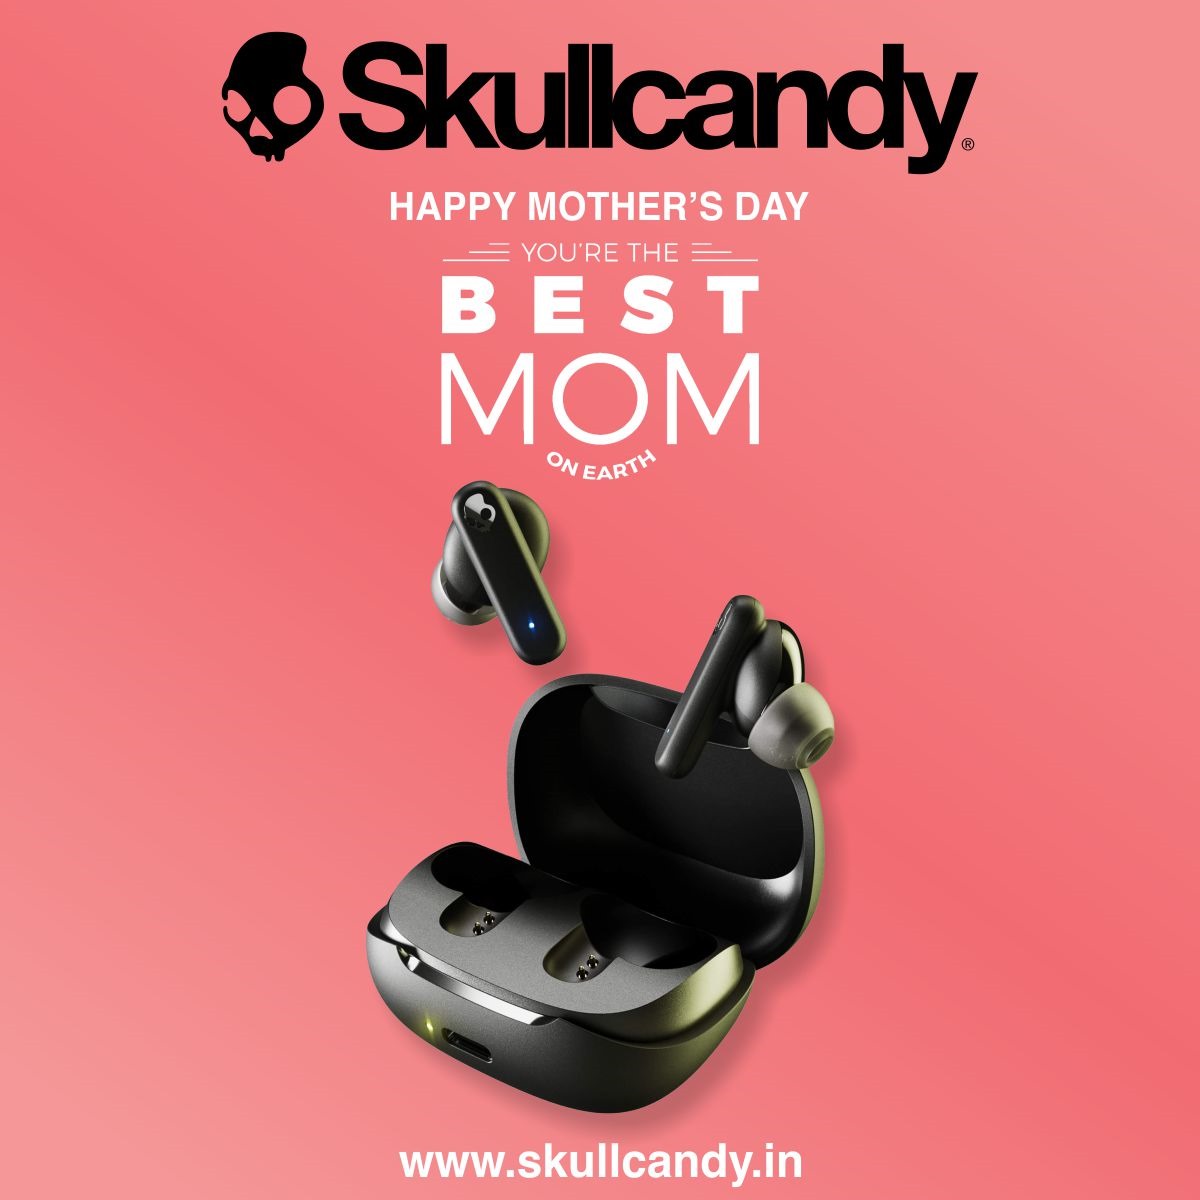 Happy Mother's Day ❤️

#skullcandy #feelskullcandy #happymothersday